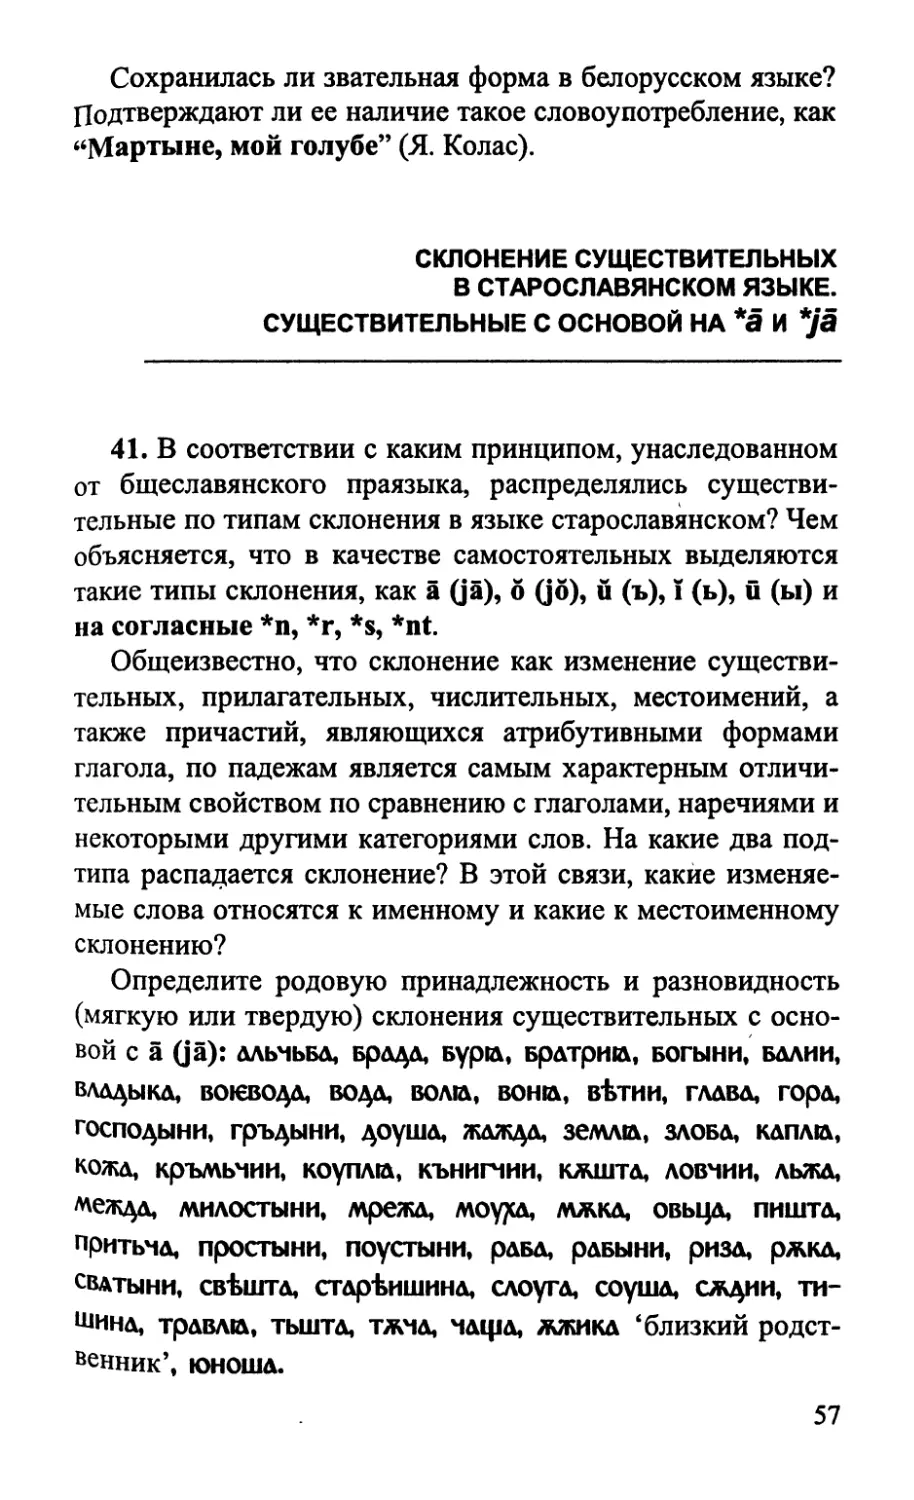 Склонение существительных в старославянском языке
Существительные с основой на *ā и *jā